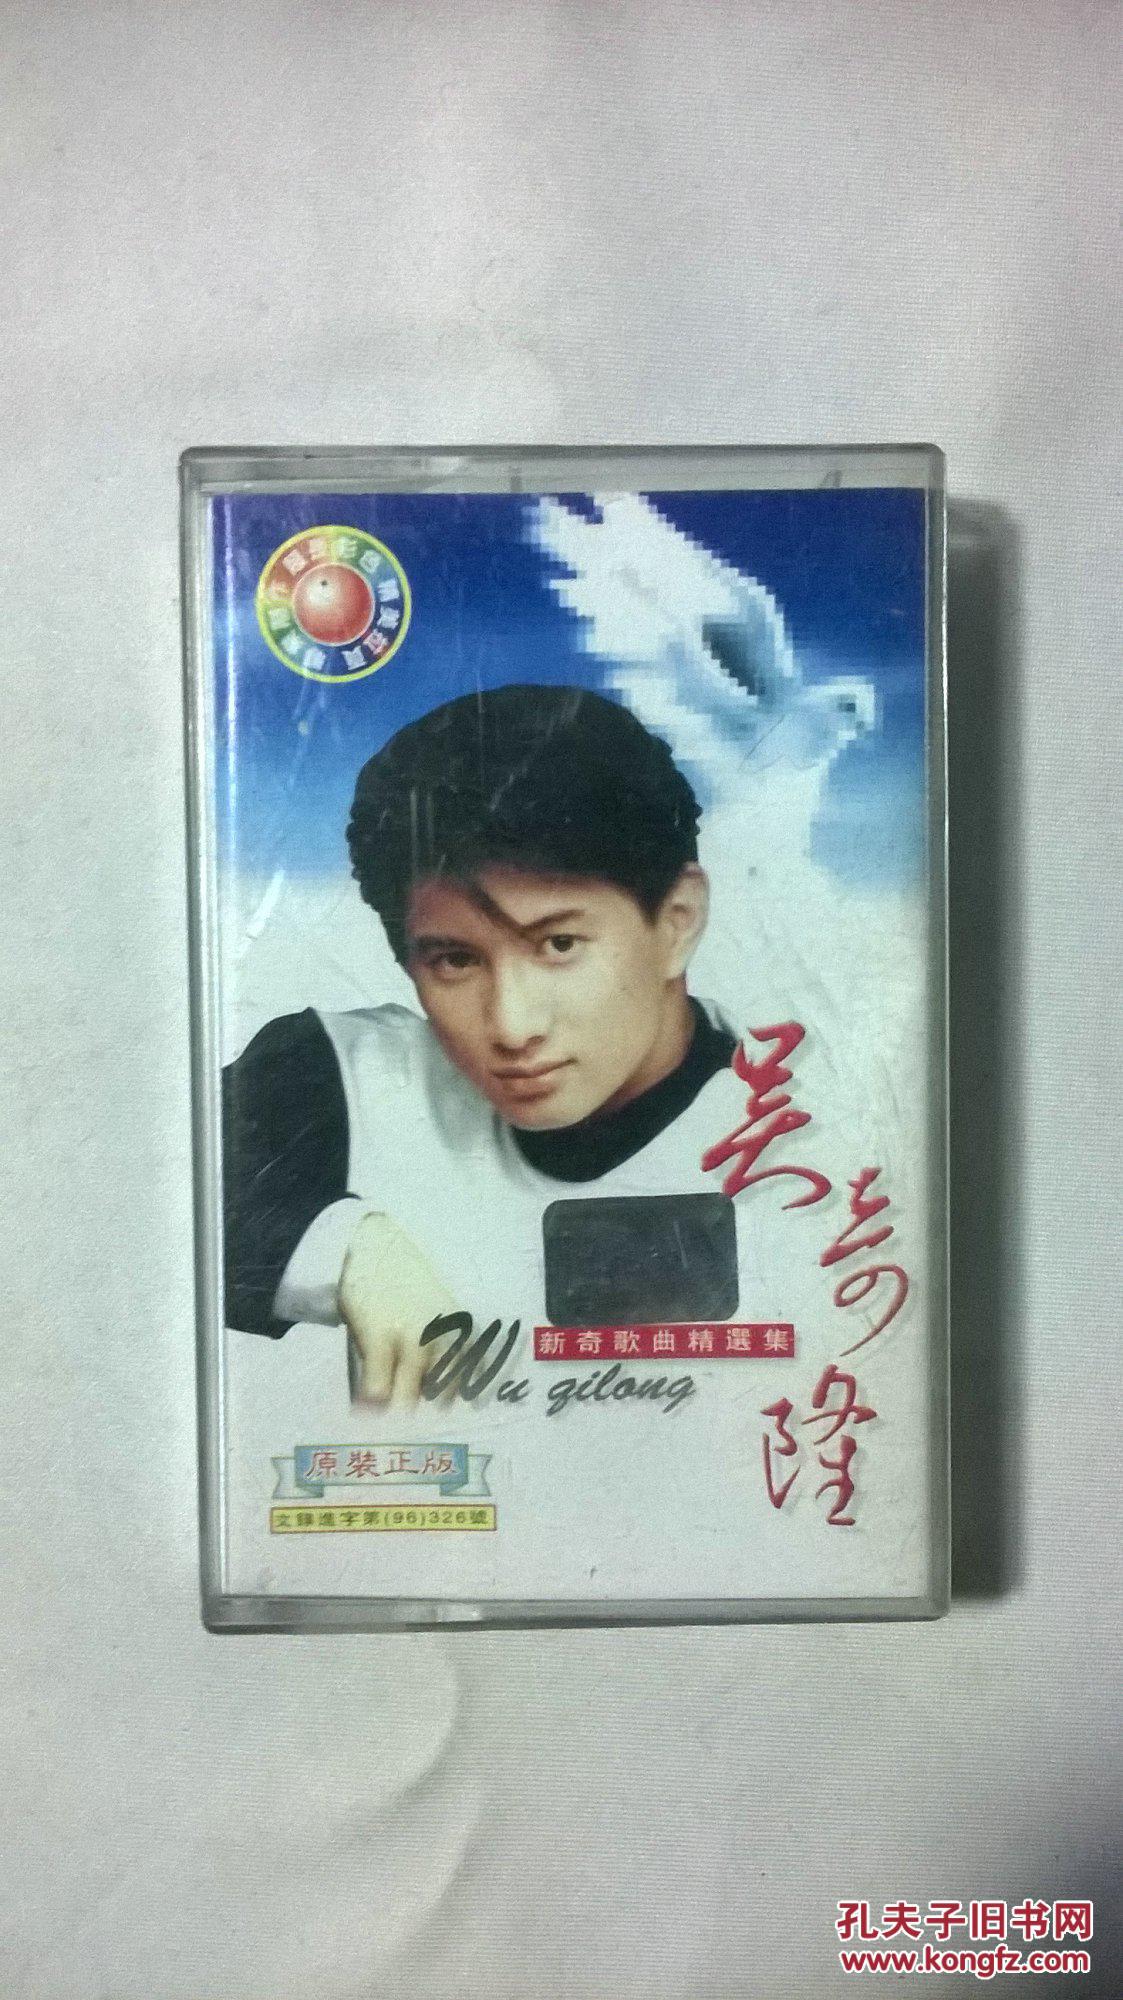 【图】磁带吴奇隆新奇歌曲精选集1996年(歌词